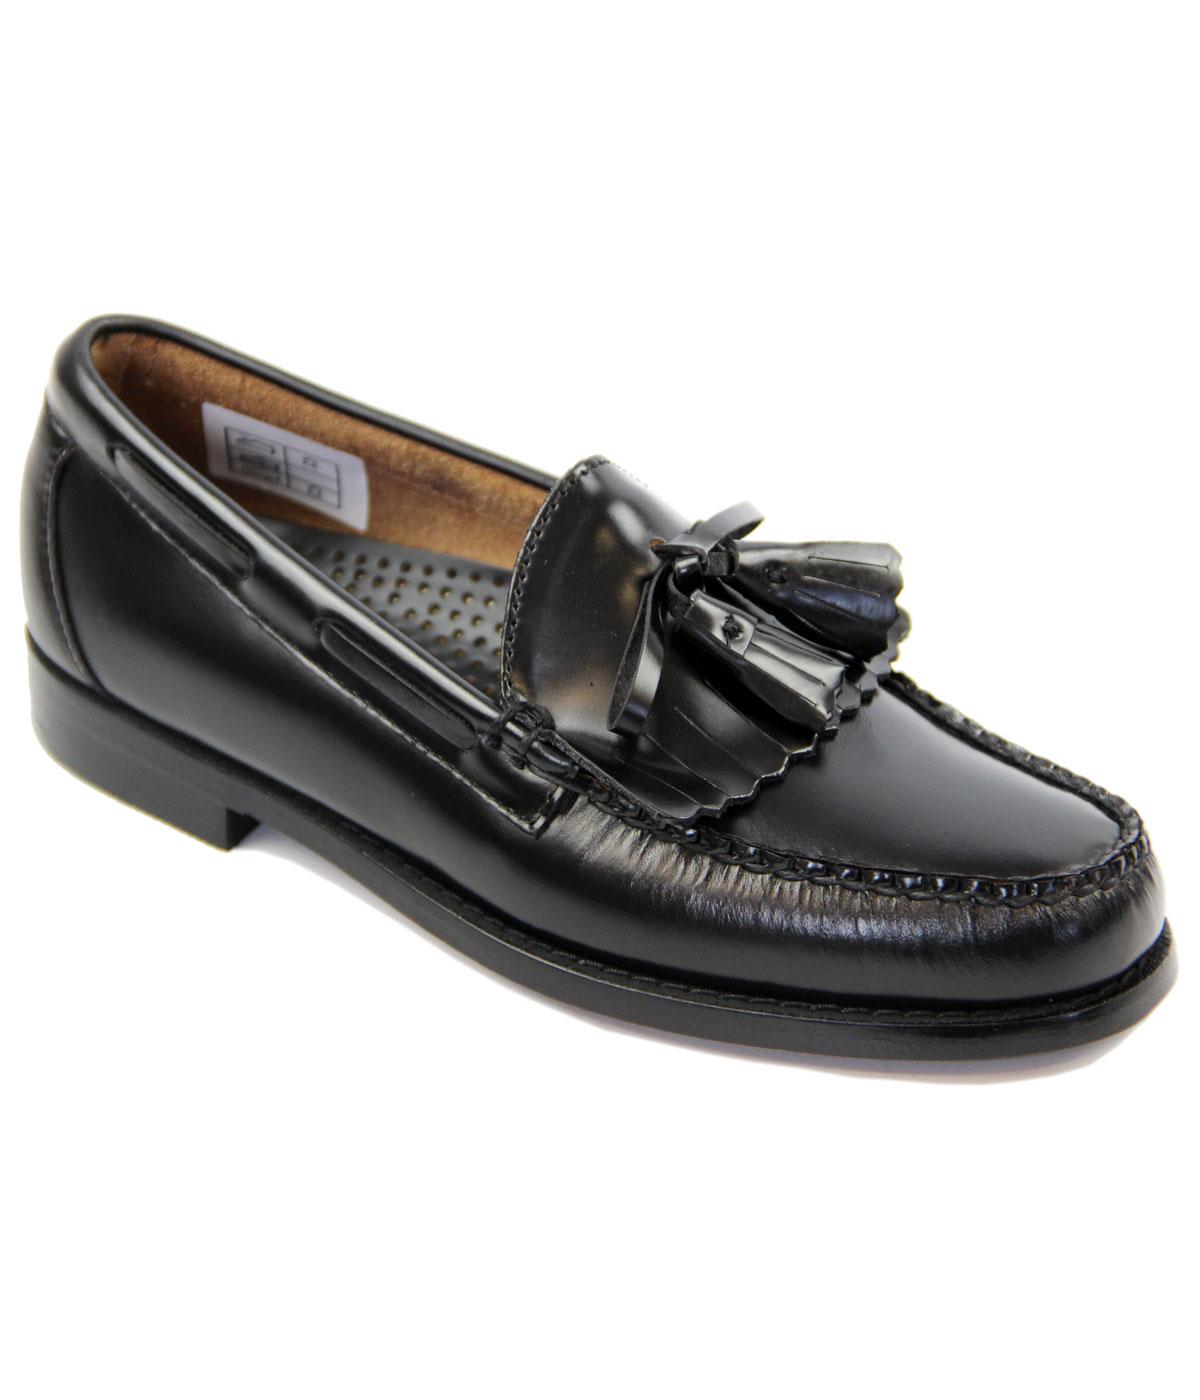 Layton BASS WEEJUNS Mod Tassel Fringe Loafer Shoes